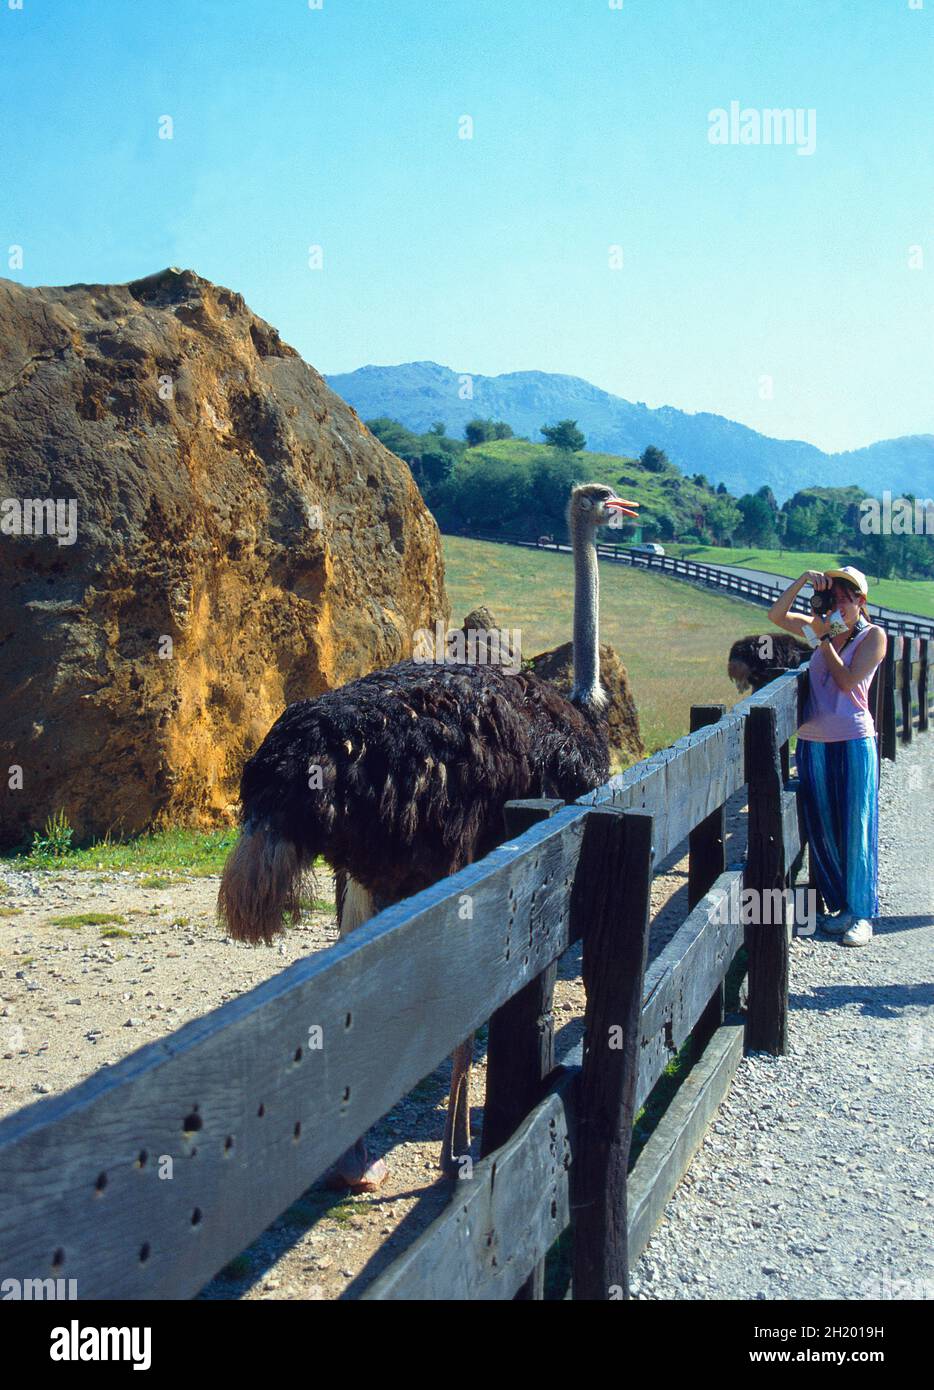 Frau, die Fotos von einem Strauß gemacht hat. Naturschutzgebiet Cabarceno, Kantabrien, Spanien. Stockfoto